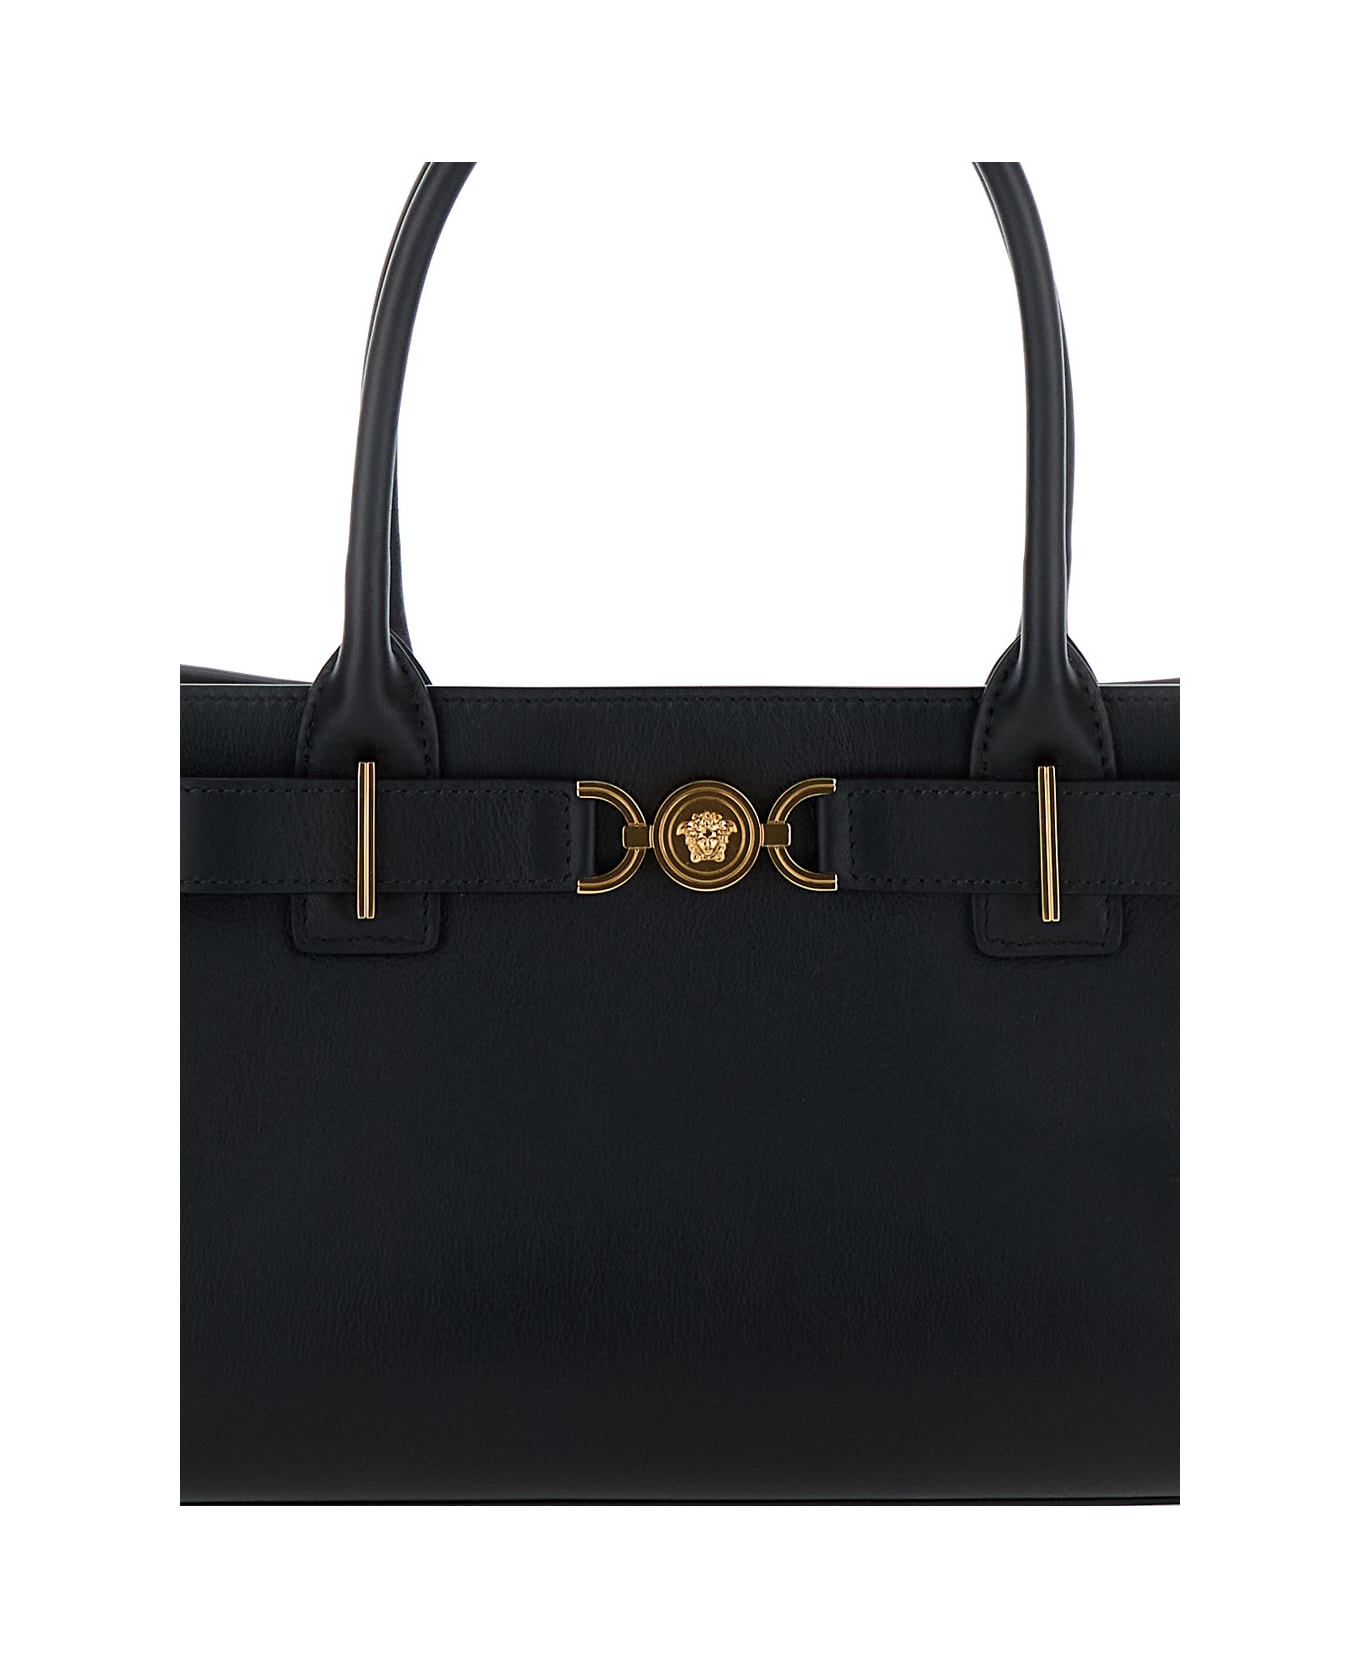 Versace Medusa Shopper Bag '95 - Black versace gold トートバッグ